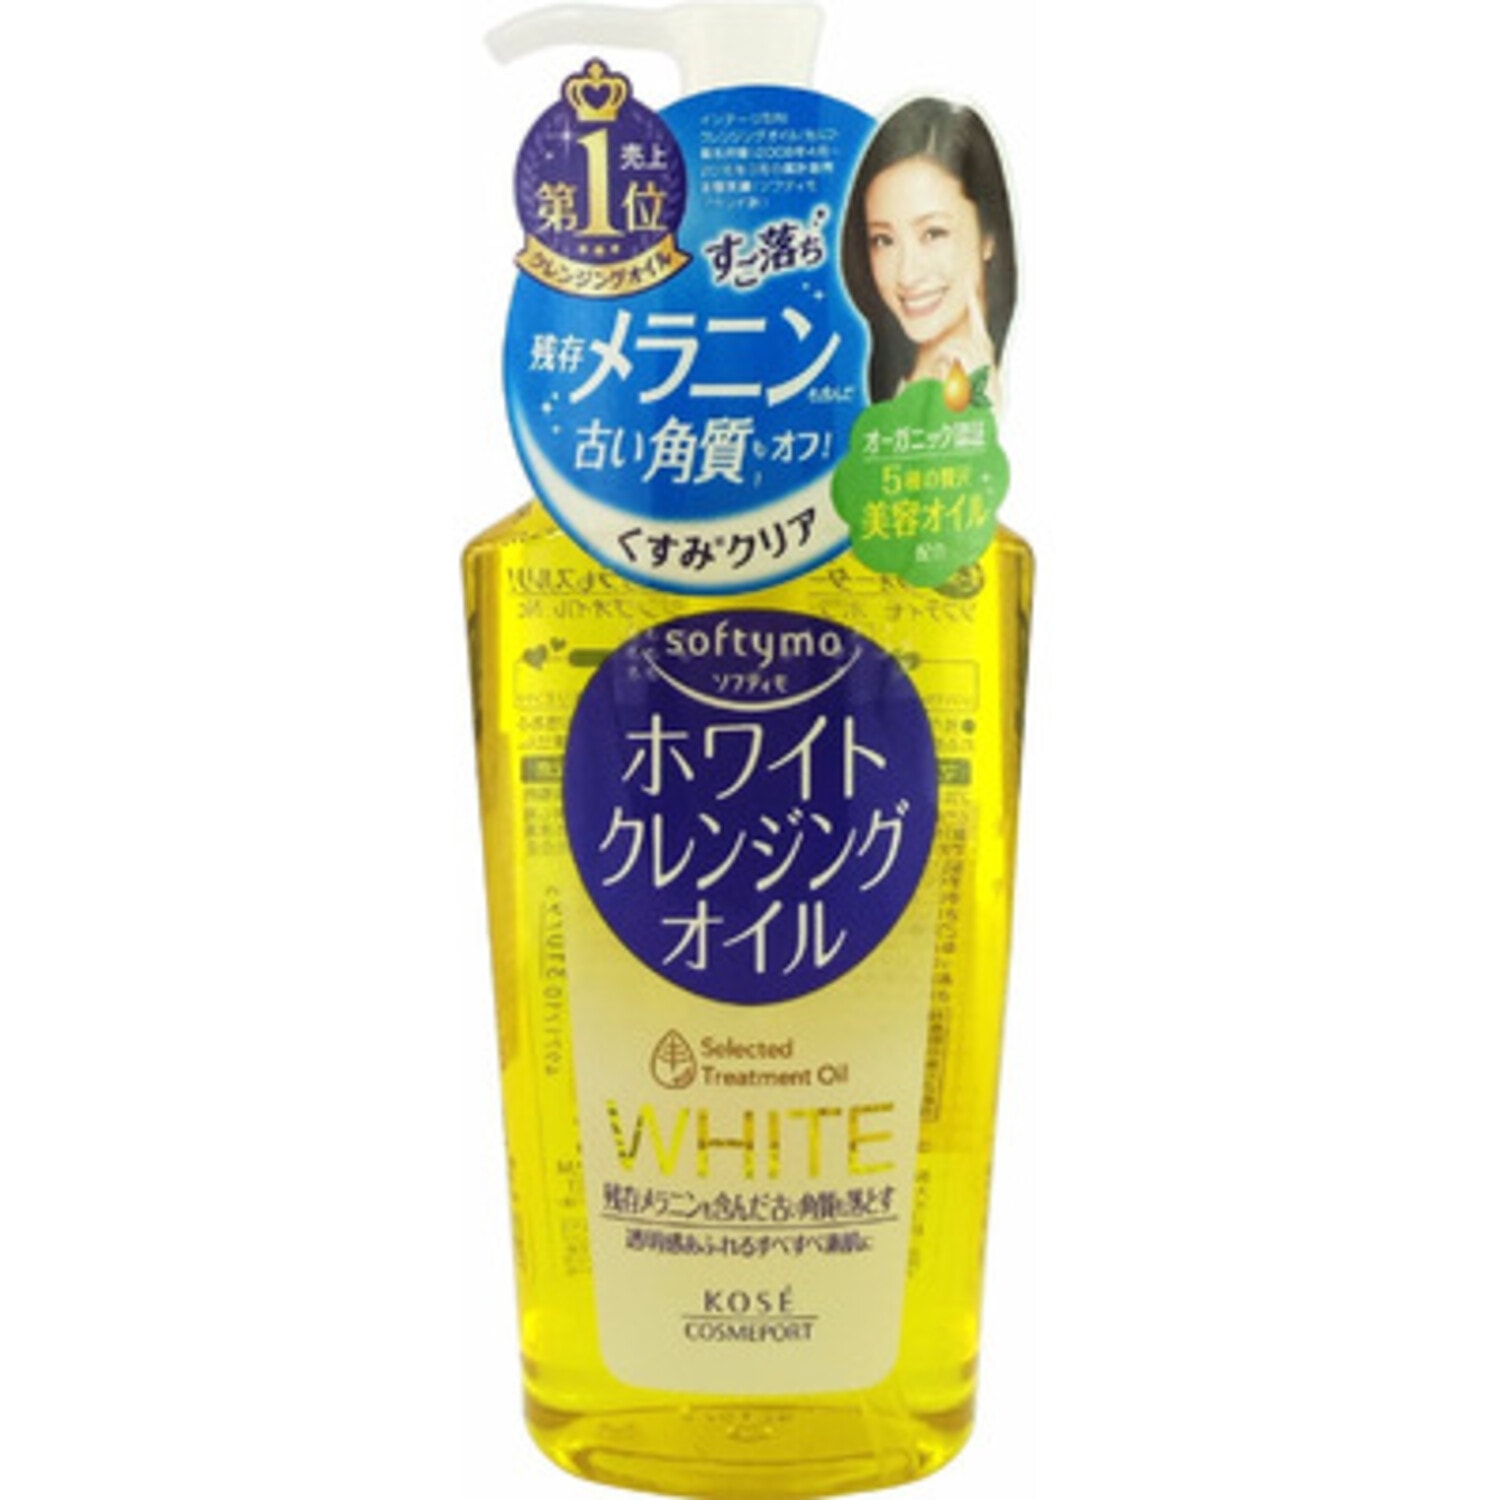 Kose Cosmeport Softymo Очищающее гидрофильное масло-пена для снятия макияжа, с экстрактом апельсинового масла с отбеливающим эффектом, 230 мл. / 310795